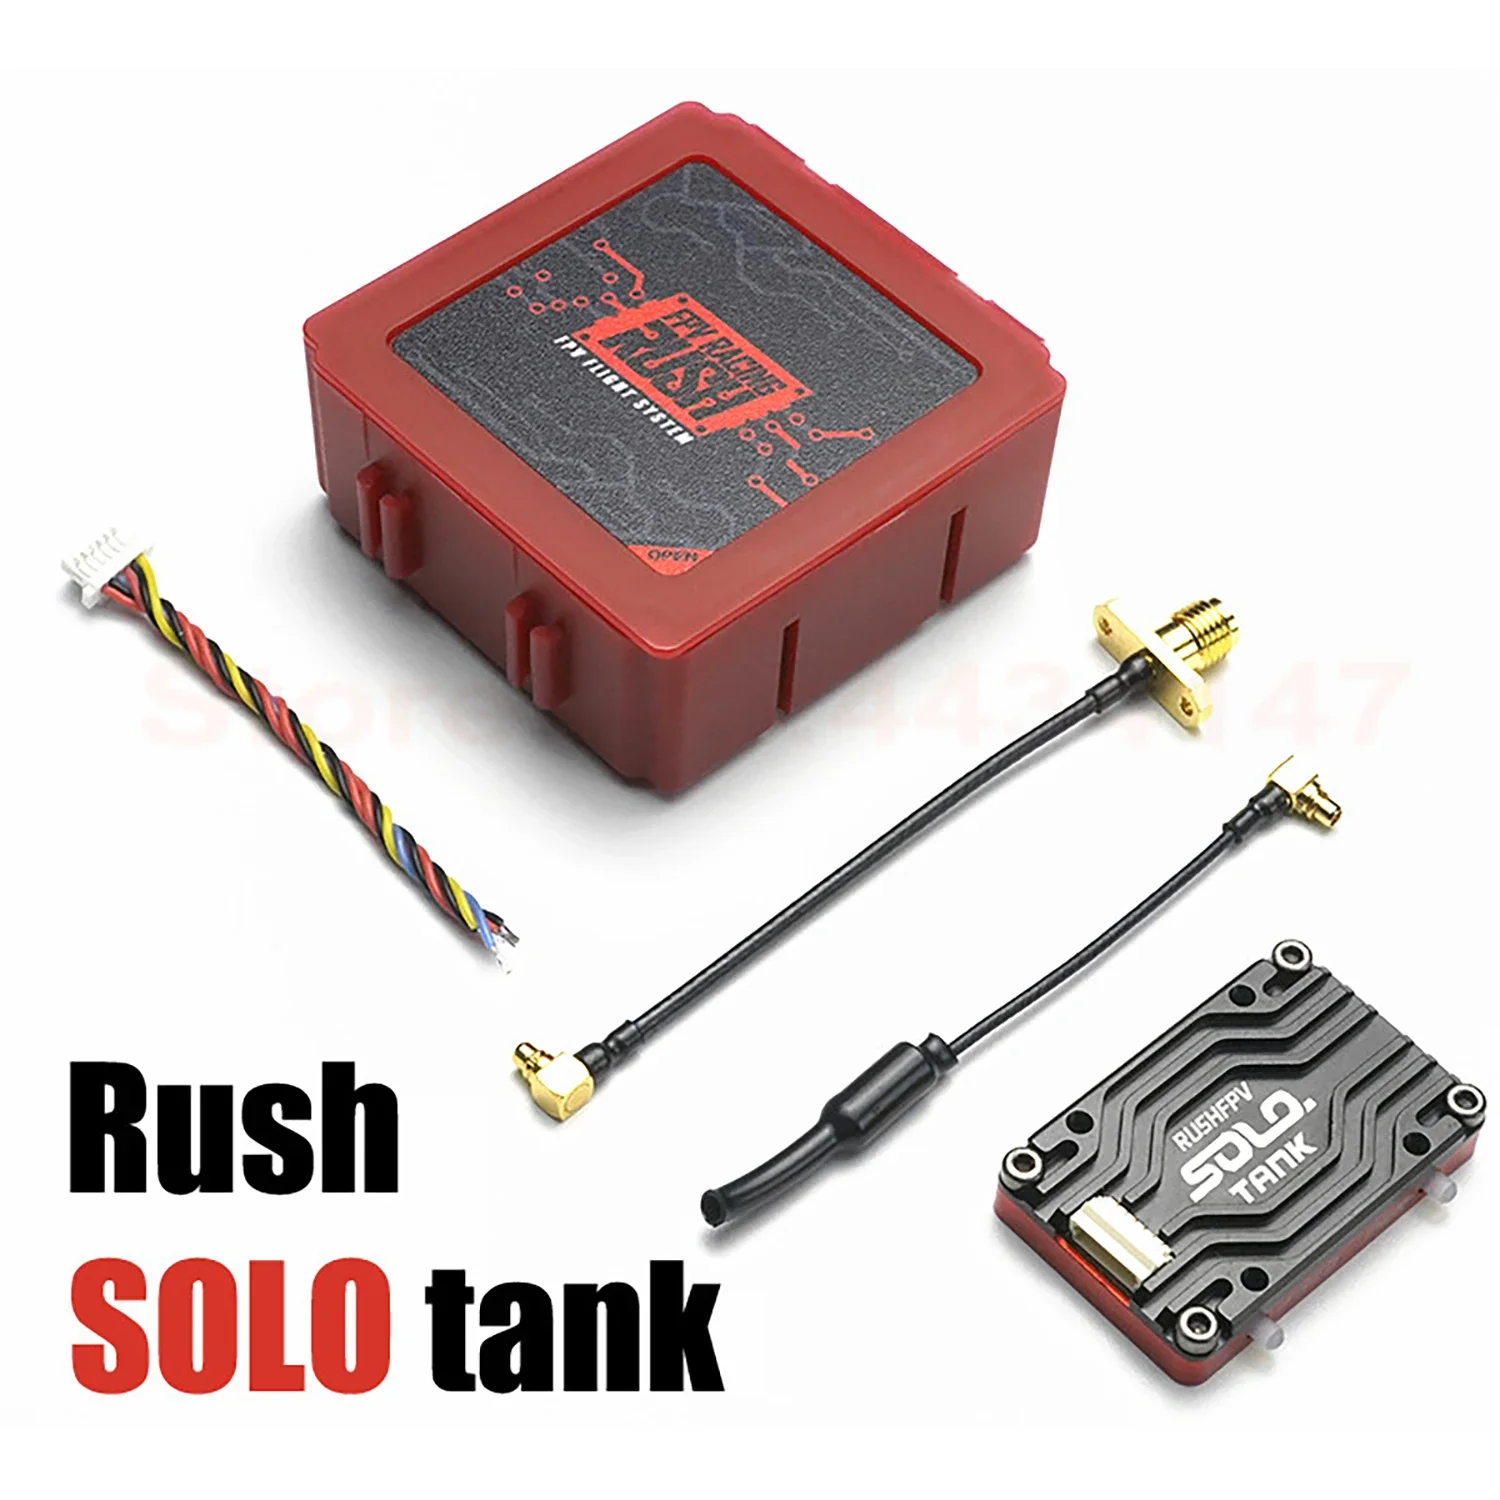 

Видеопередатчик RUSH Solo Tank 5,8G VTX, корпус ЧПУ, 1,6 Вт, встроенный микрофон, структура рассеивания тепла для RC FPV